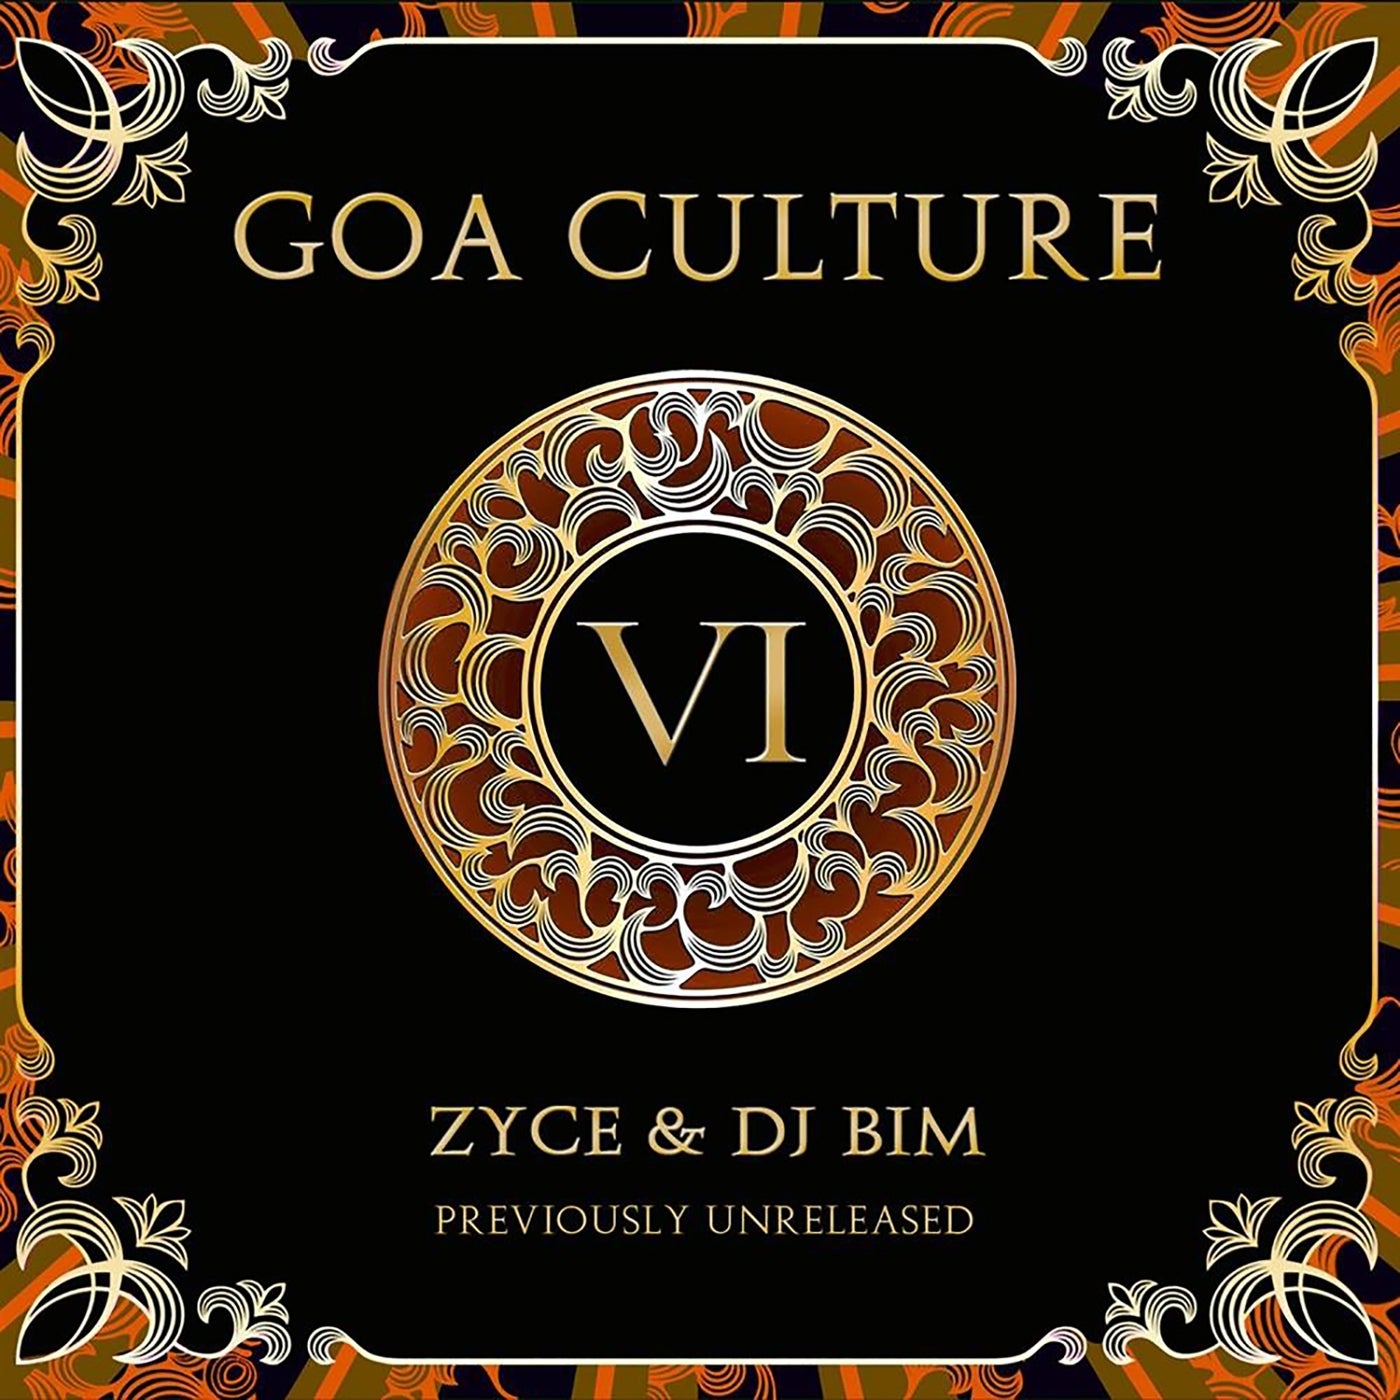 Goa Culture, Vol. 6